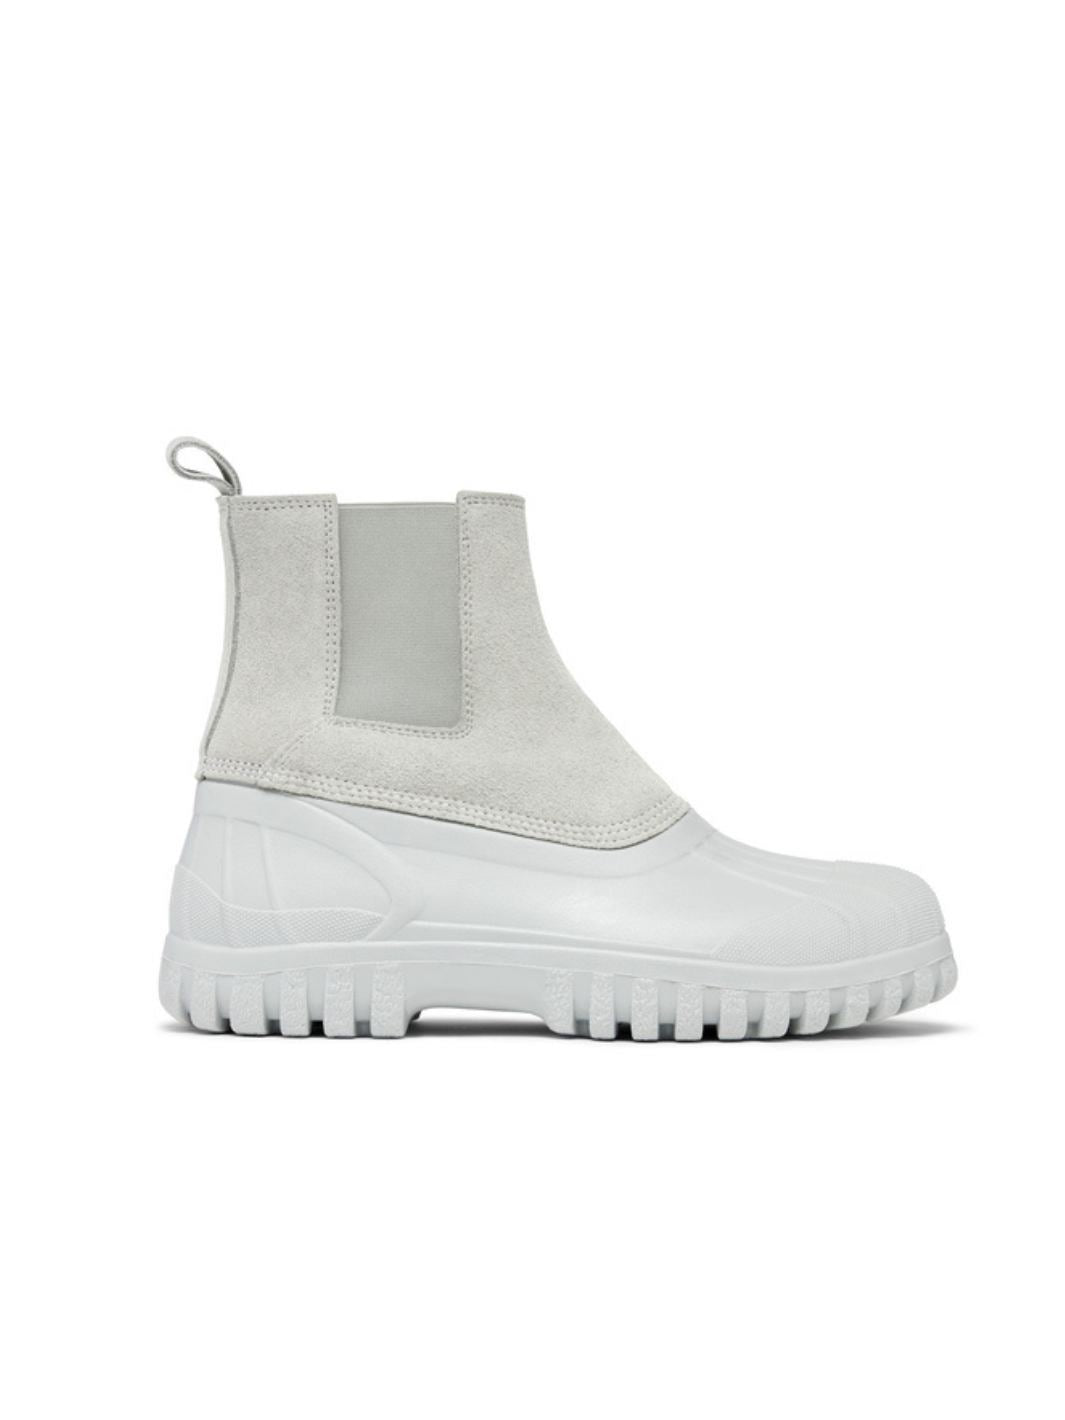 Diemme Shoes Boots | Balbi Suede Cloud Cream